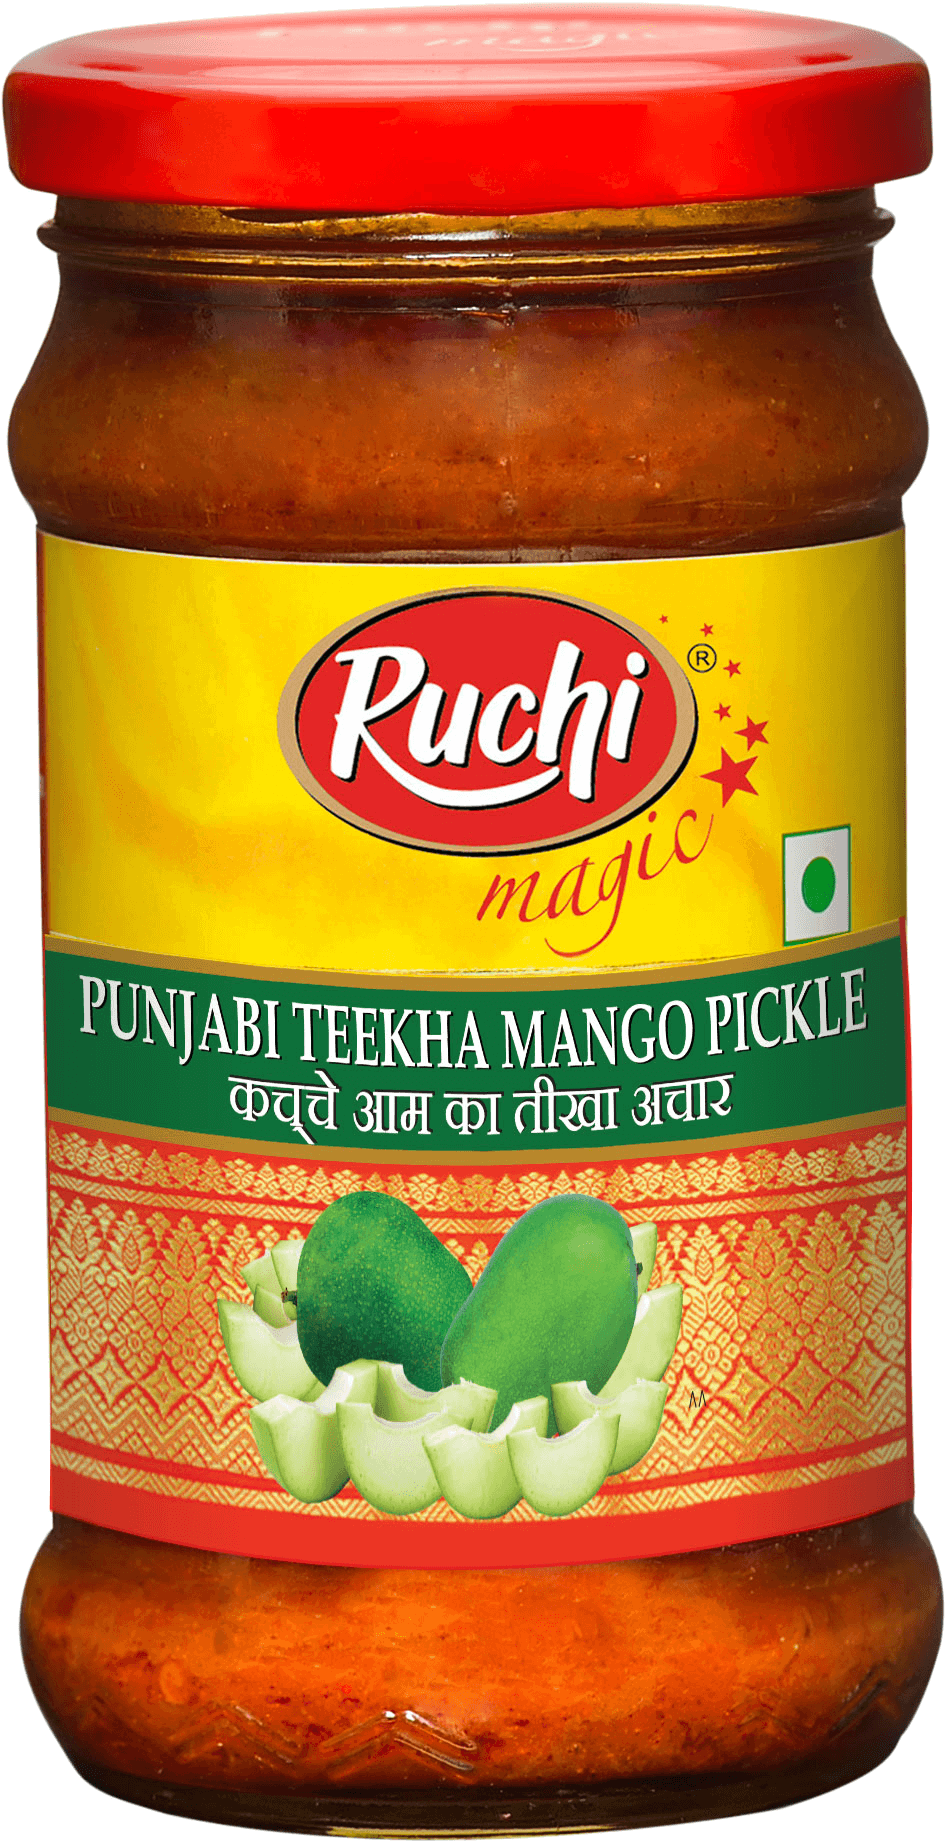 Ruchi – Punjabi Teekha Mango